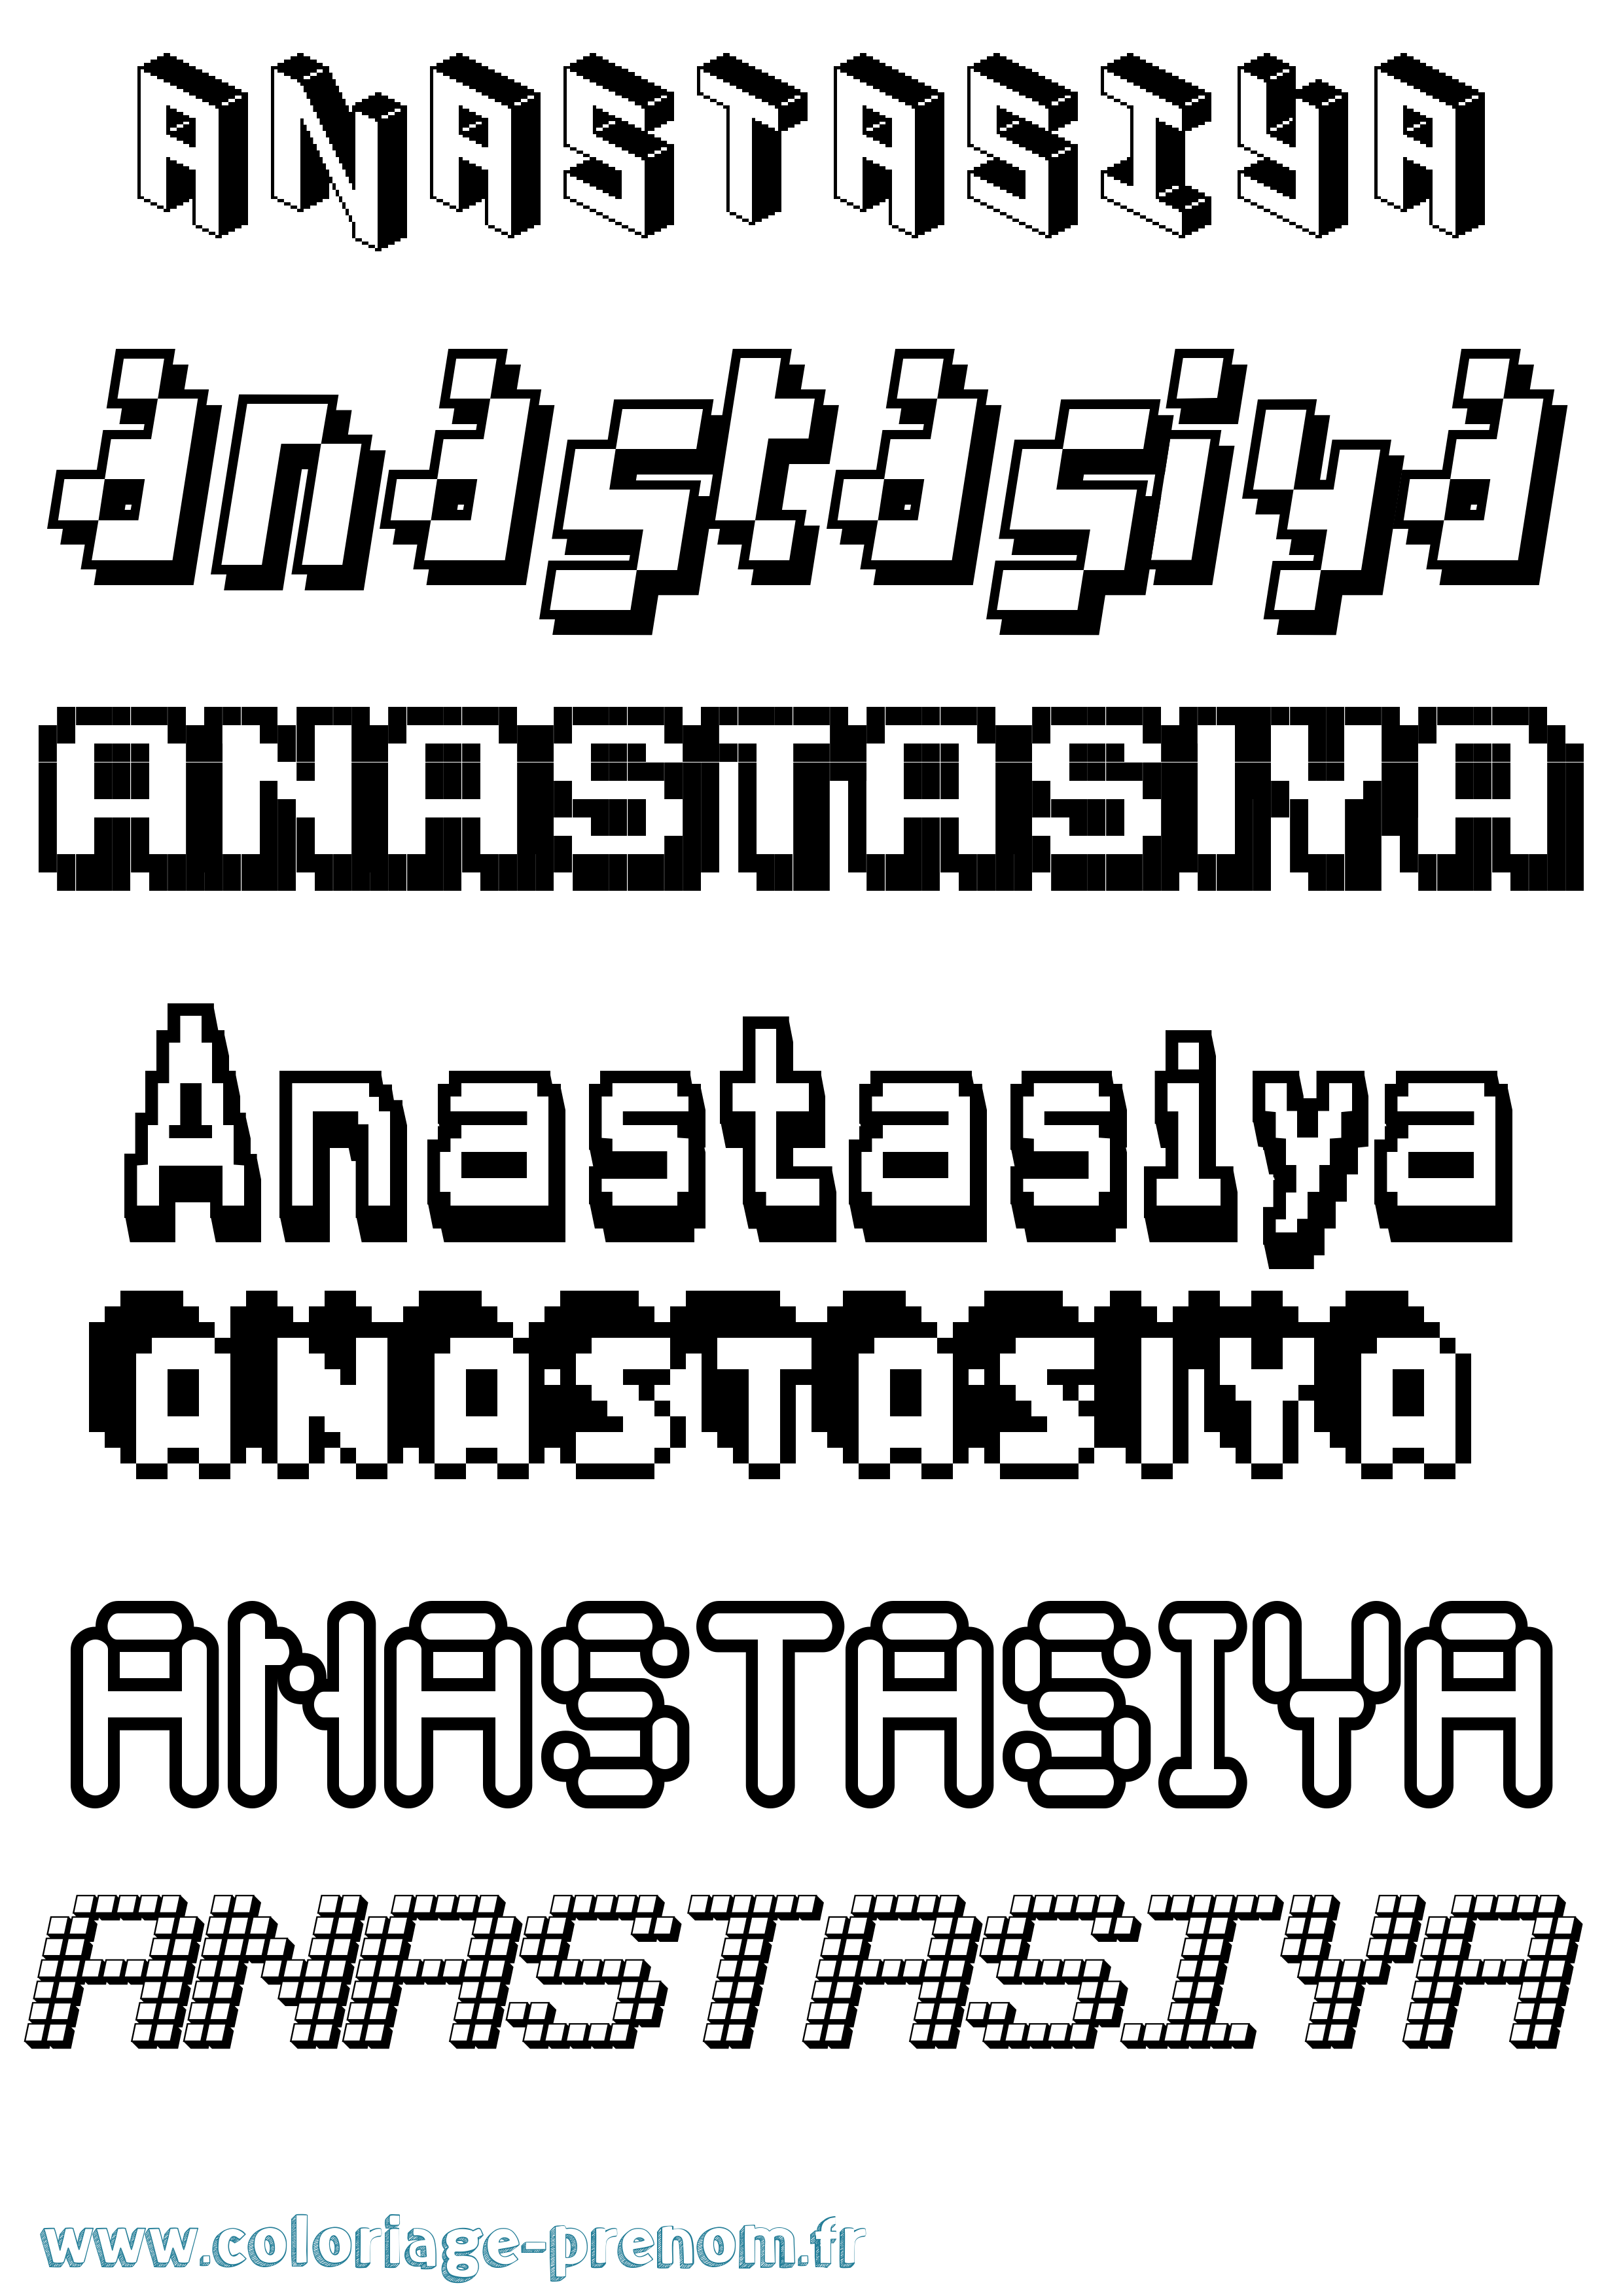 Coloriage prénom Anastasiya Pixel